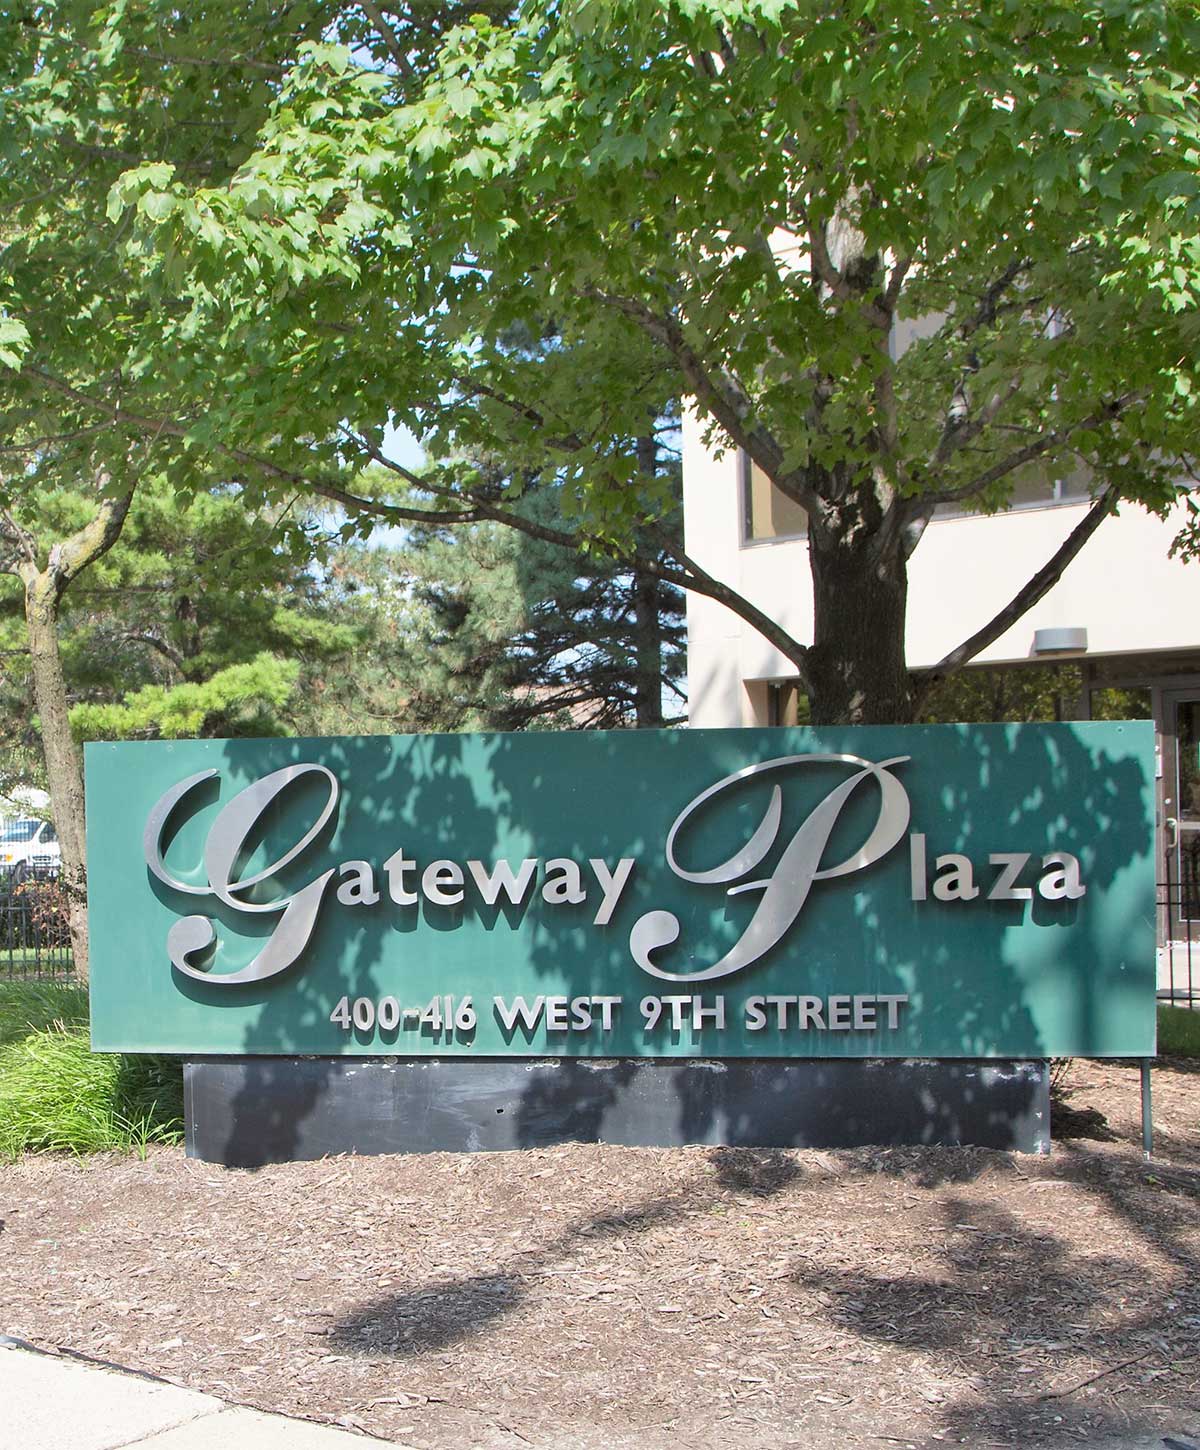 Contact Gateway Plaza